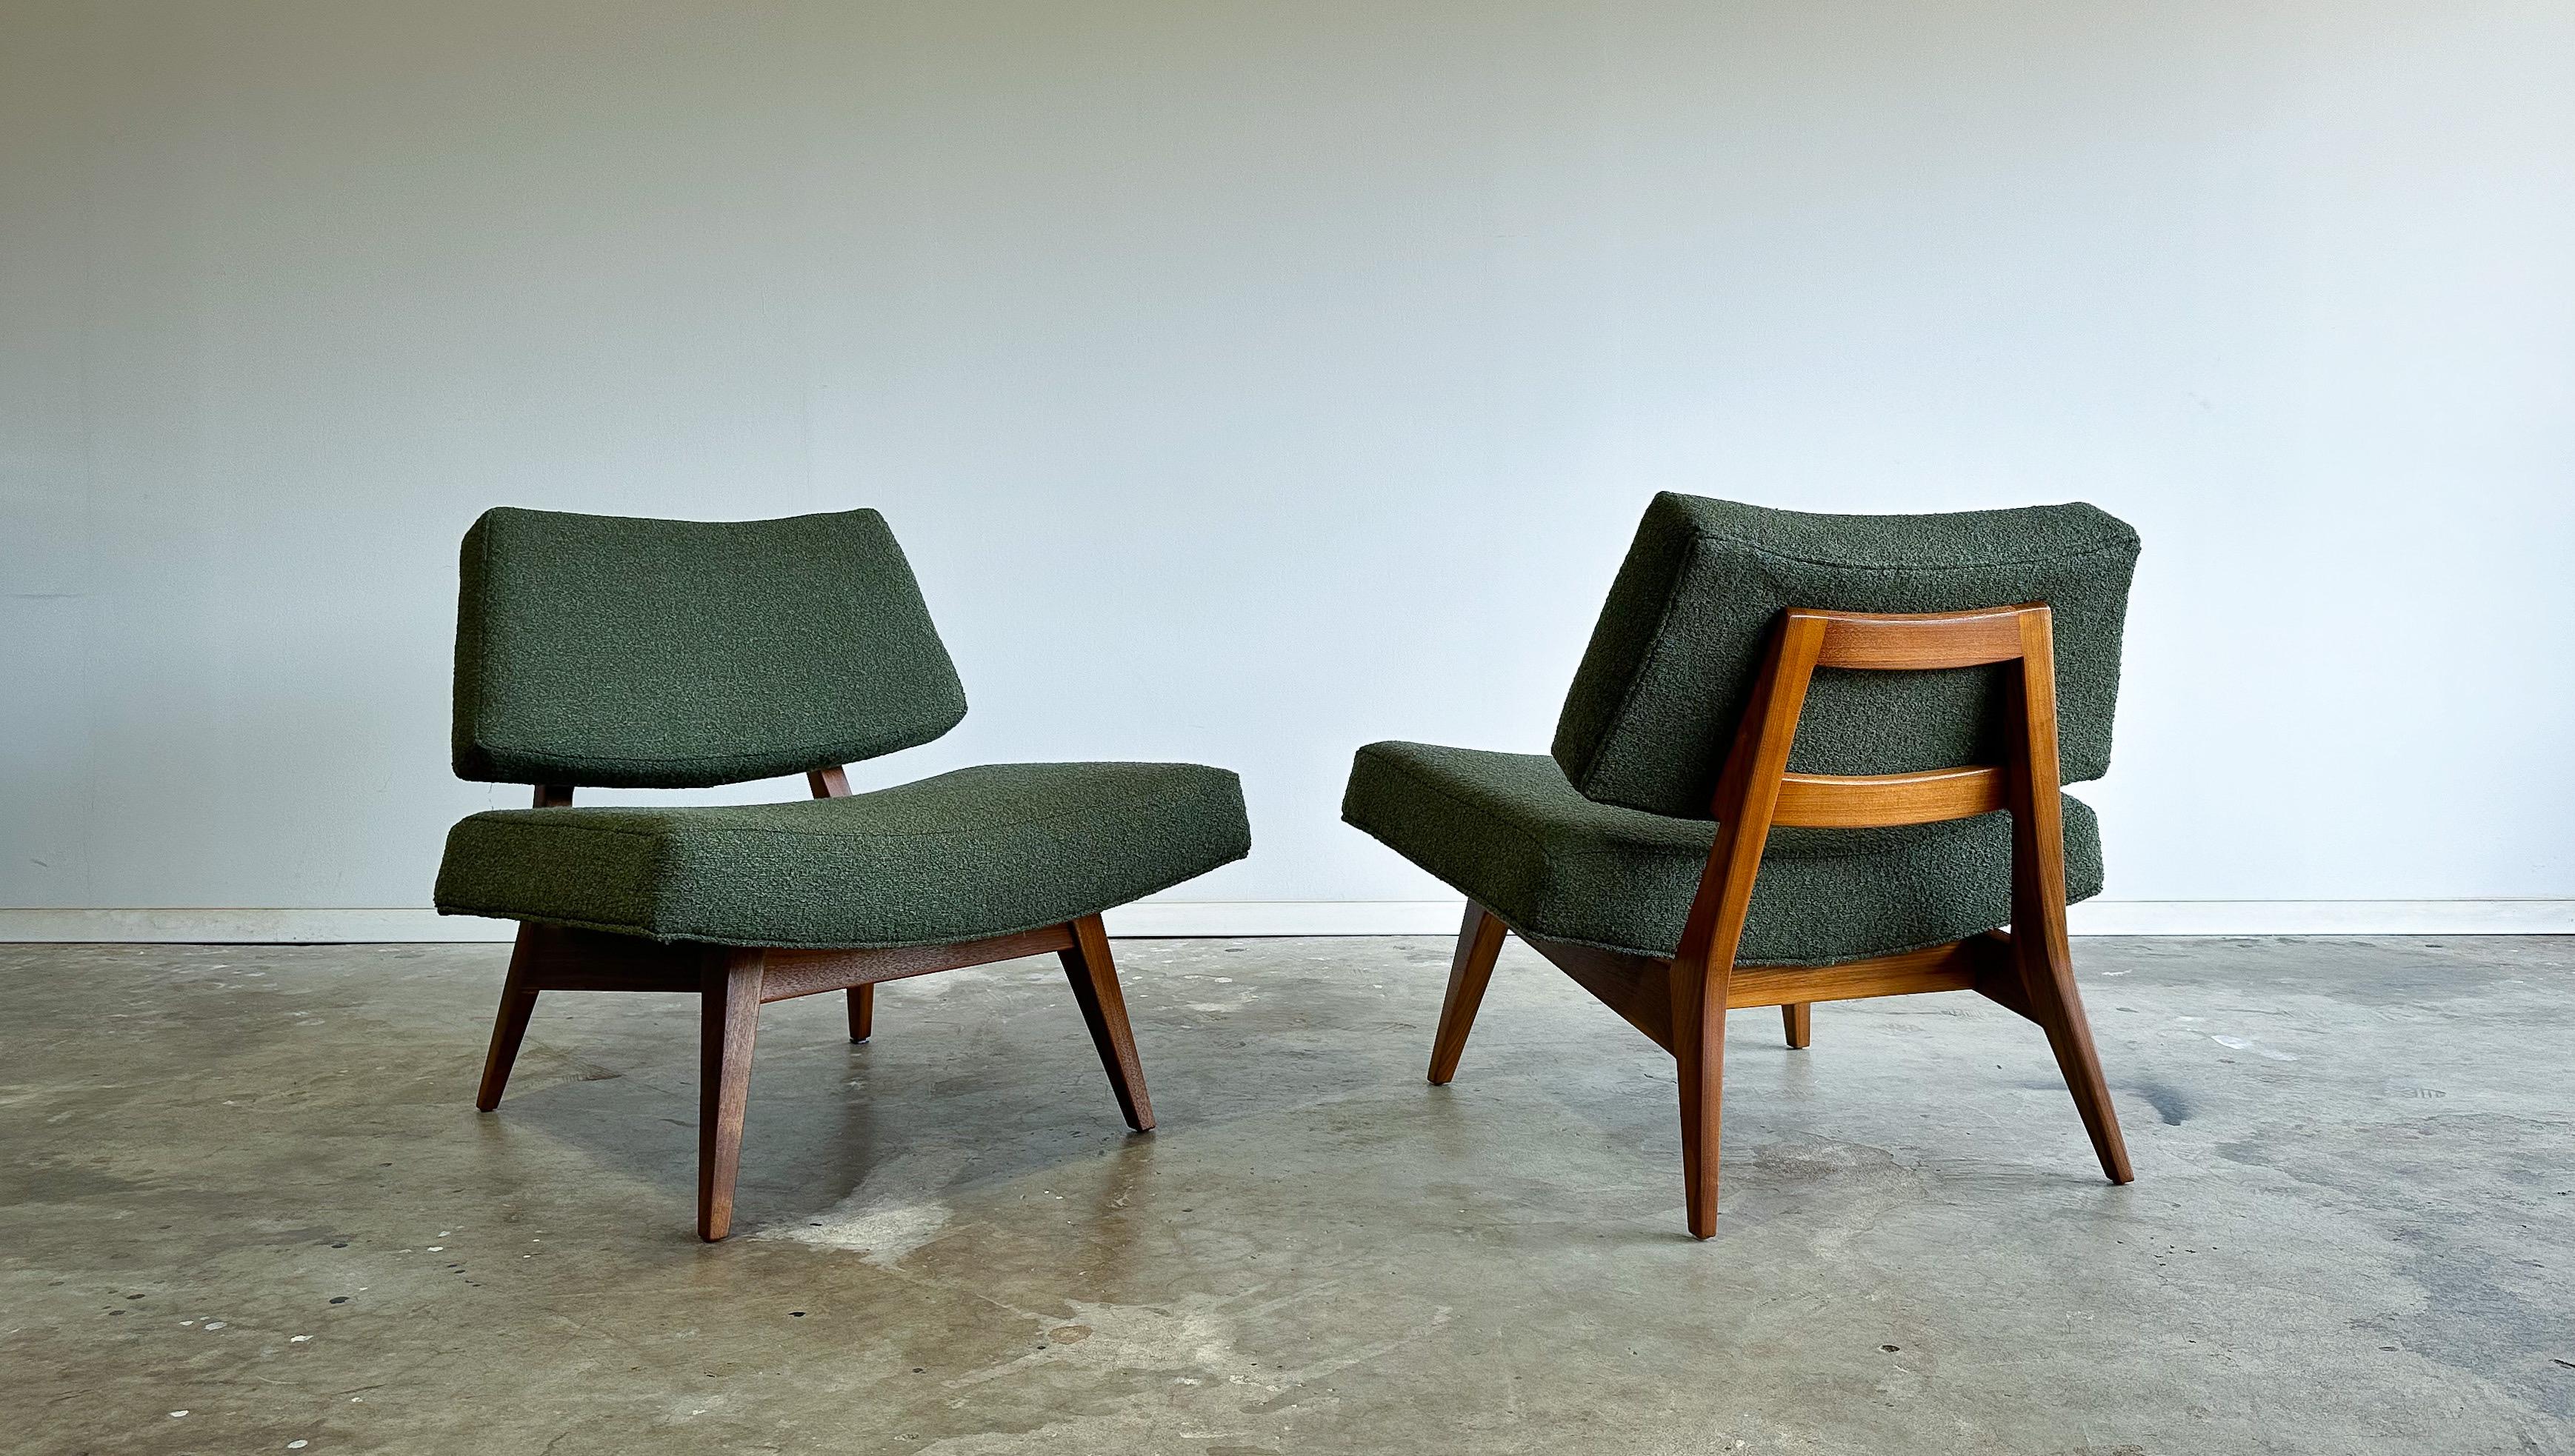 Angeboten wird ein seltenes Paar niedriger Sessel, entworfen von Jens Risom für Risom Designs, Inc. um 1952.

Niedrig, tief und breit, haben diese Stühle eine erstaunliche Präsenz und ein hohes Maß an Komfort. Vollständig restaurierte, geschnitzte